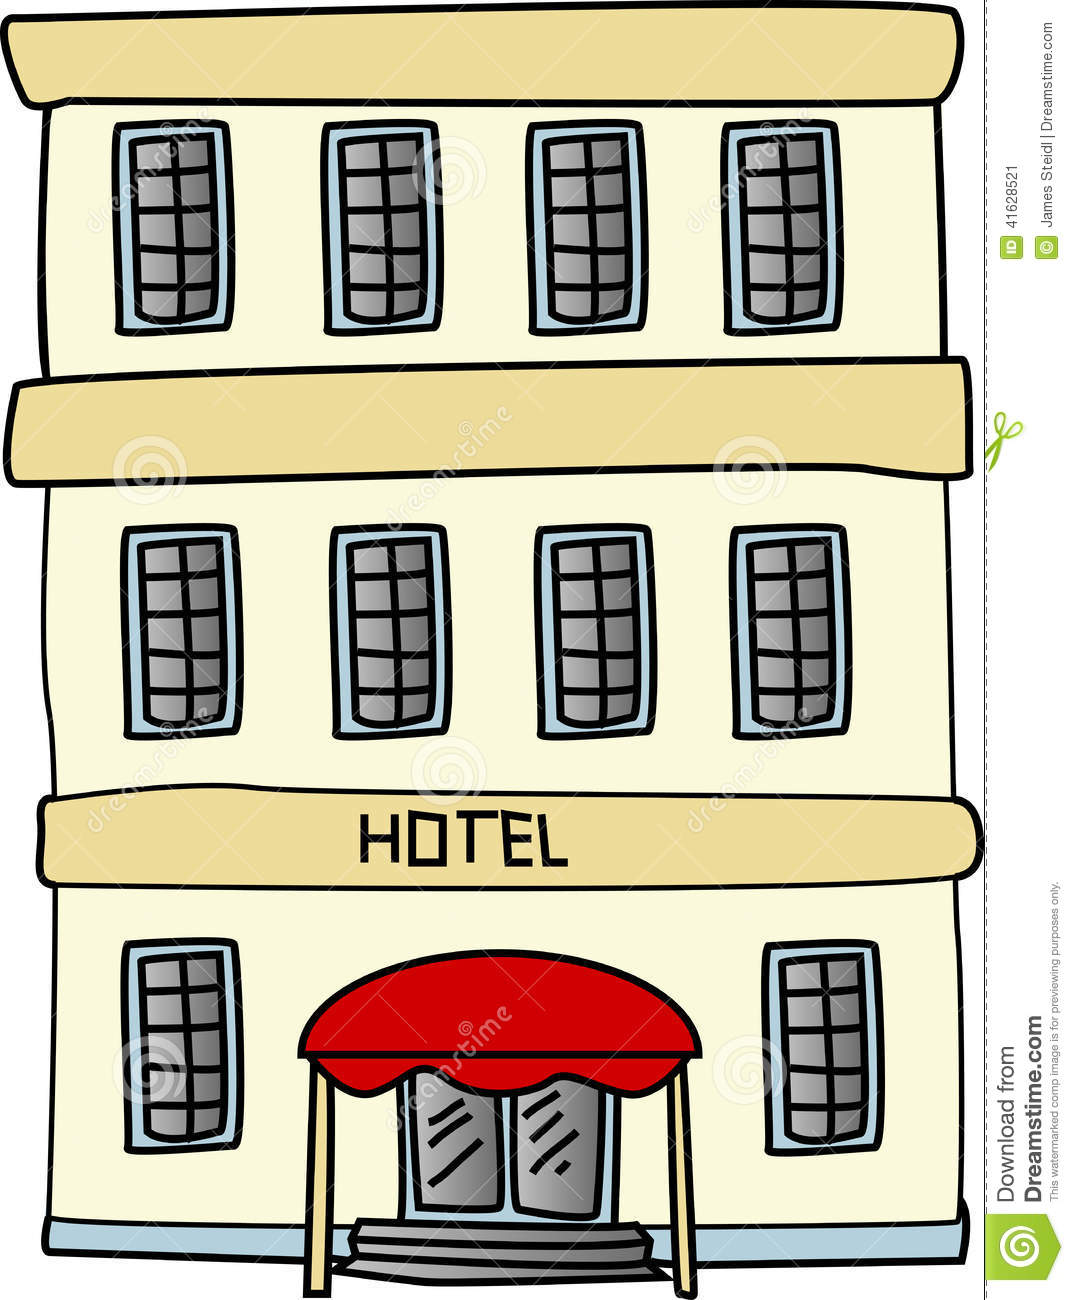 Hotel clipart hotel facility, Hotel hotel facility